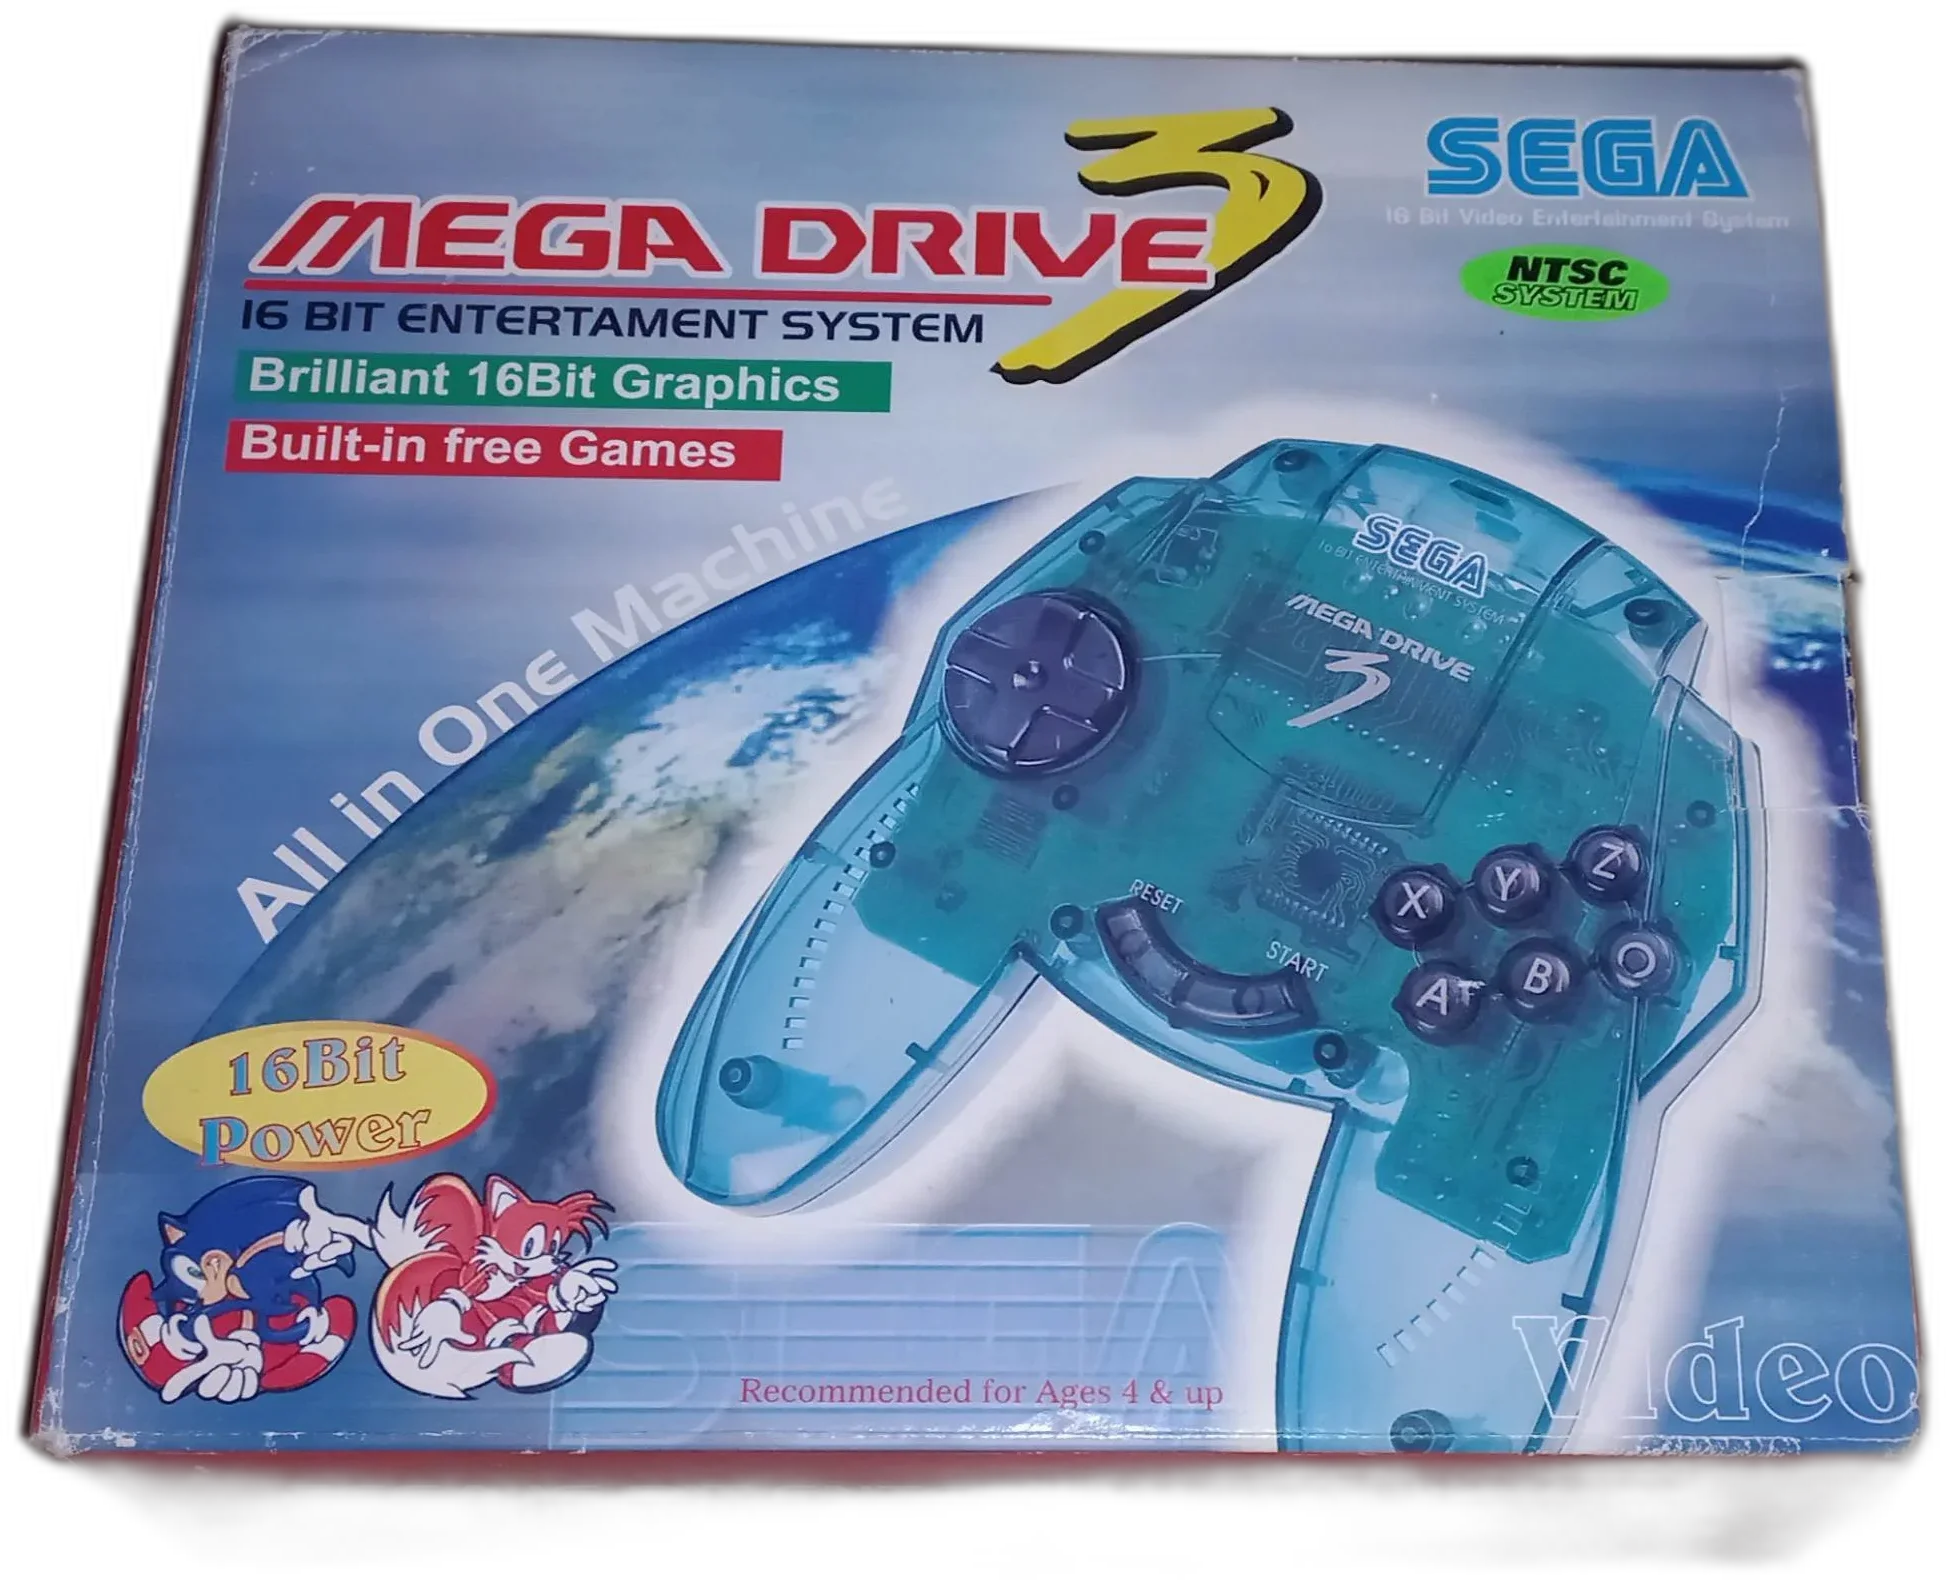  Sega Mega Drive III All in One Machine